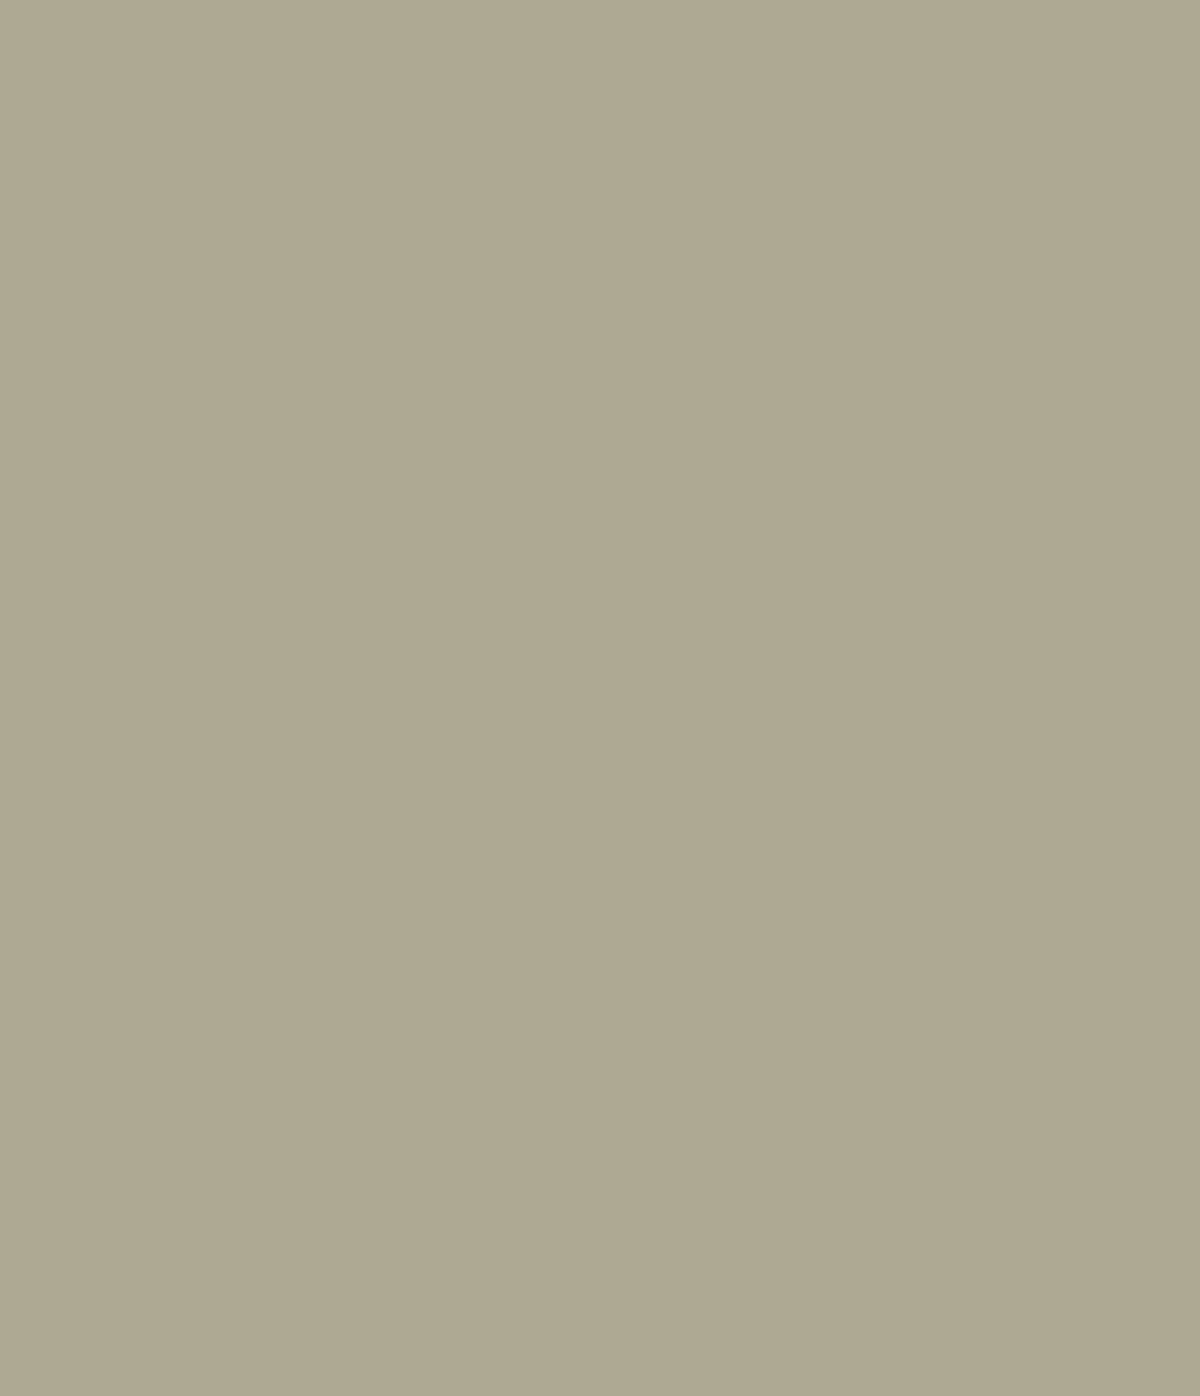 Леон Бакст. Портрет Зинаиды Гиппиус. 1906. Государственная Третьяковская галерея